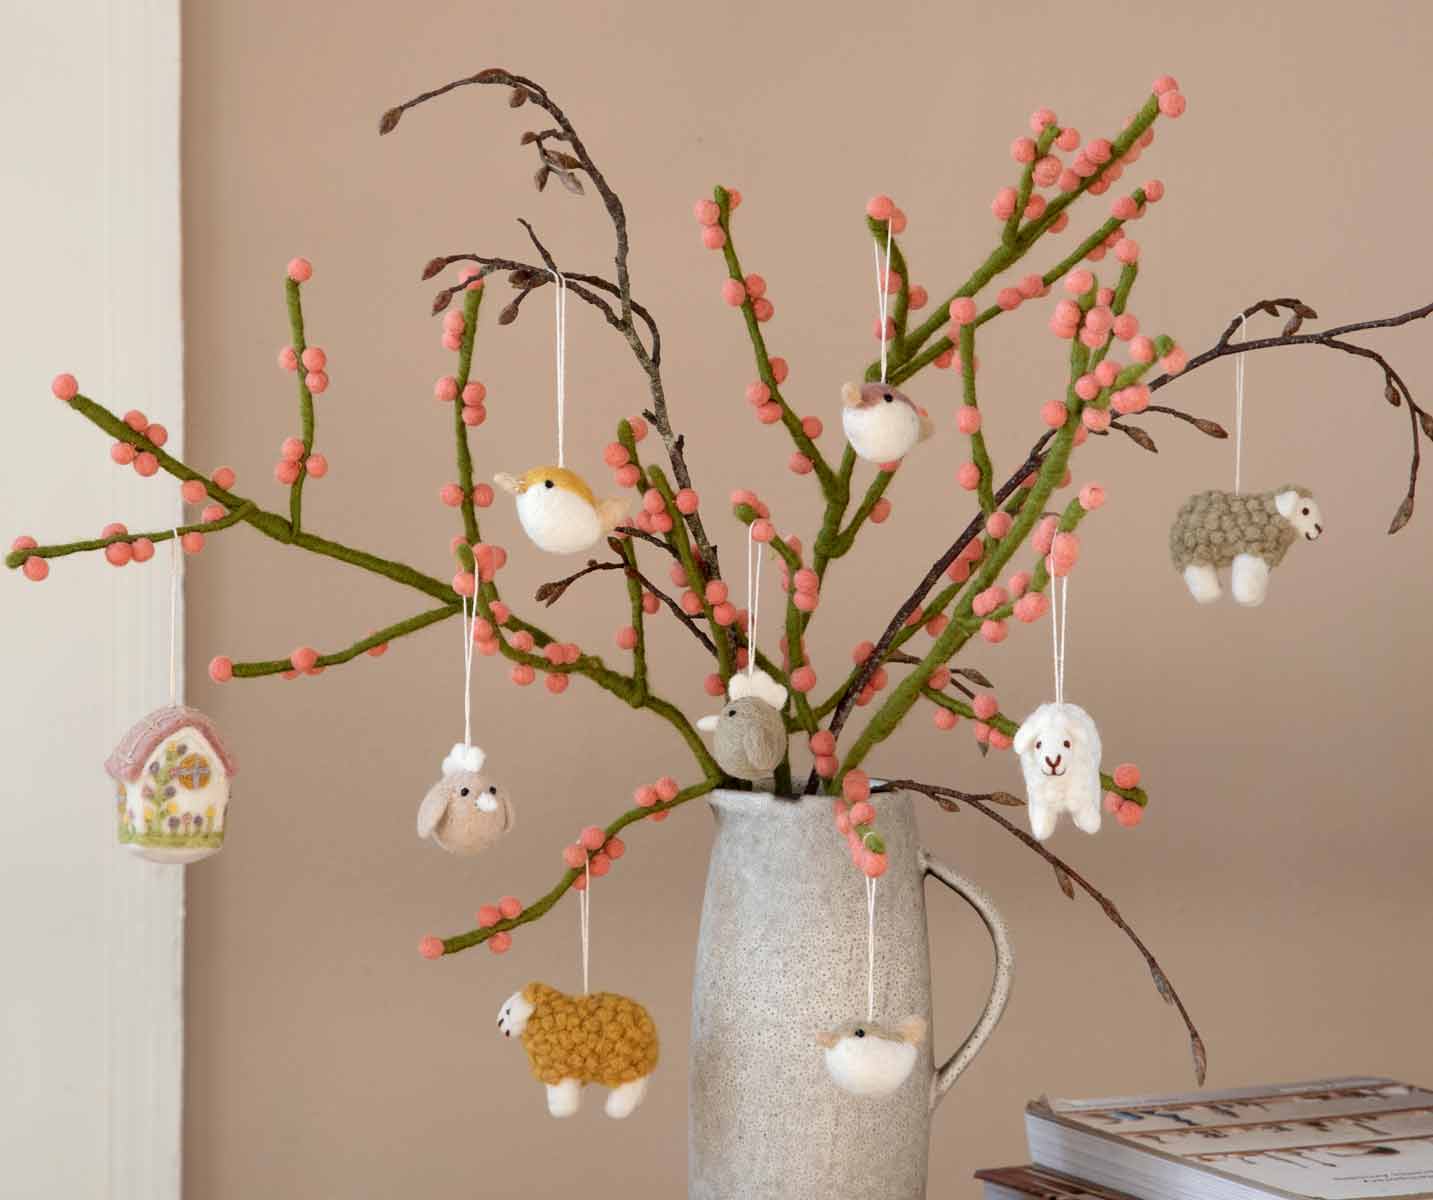 Ein dekoratives Arrangement aus Zweigen mit rosa Knospen und verschiedenen daran hängenden kleinen Tierfiguren, ausgestellt in einer grauen Vase auf einem Tisch.